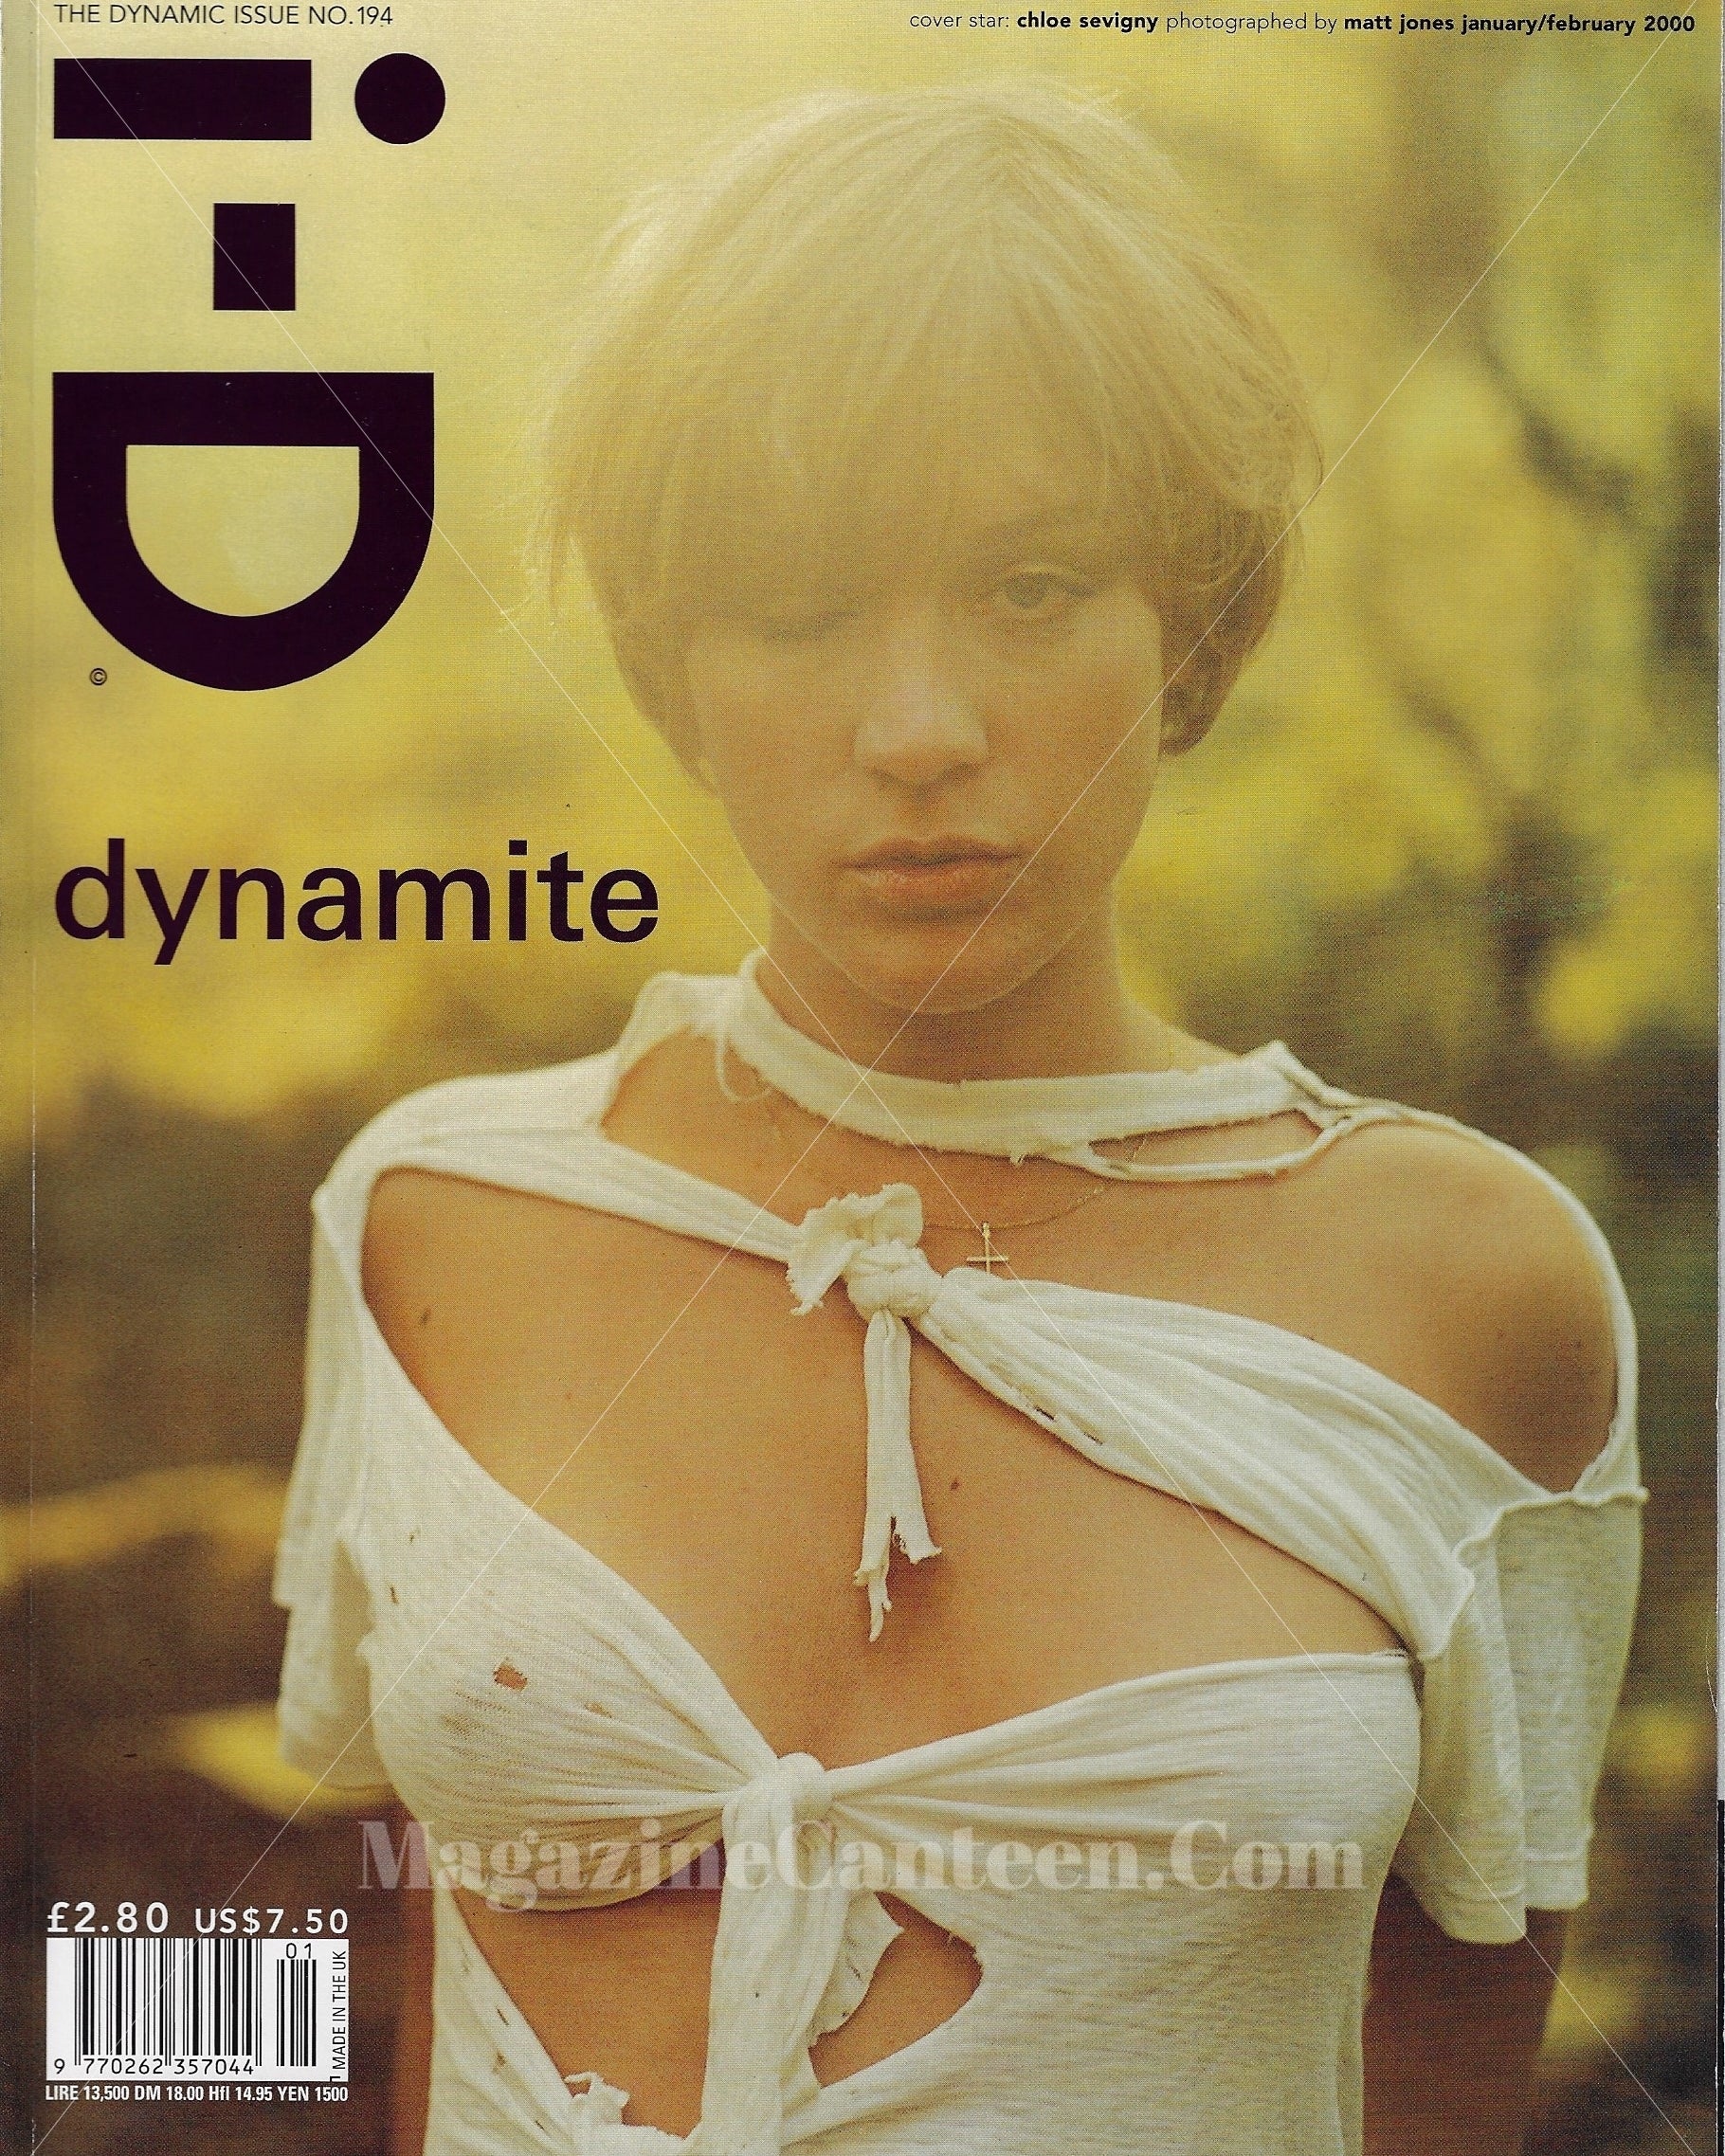 I-D Magazine 194 - Chloe Sevigny 2000